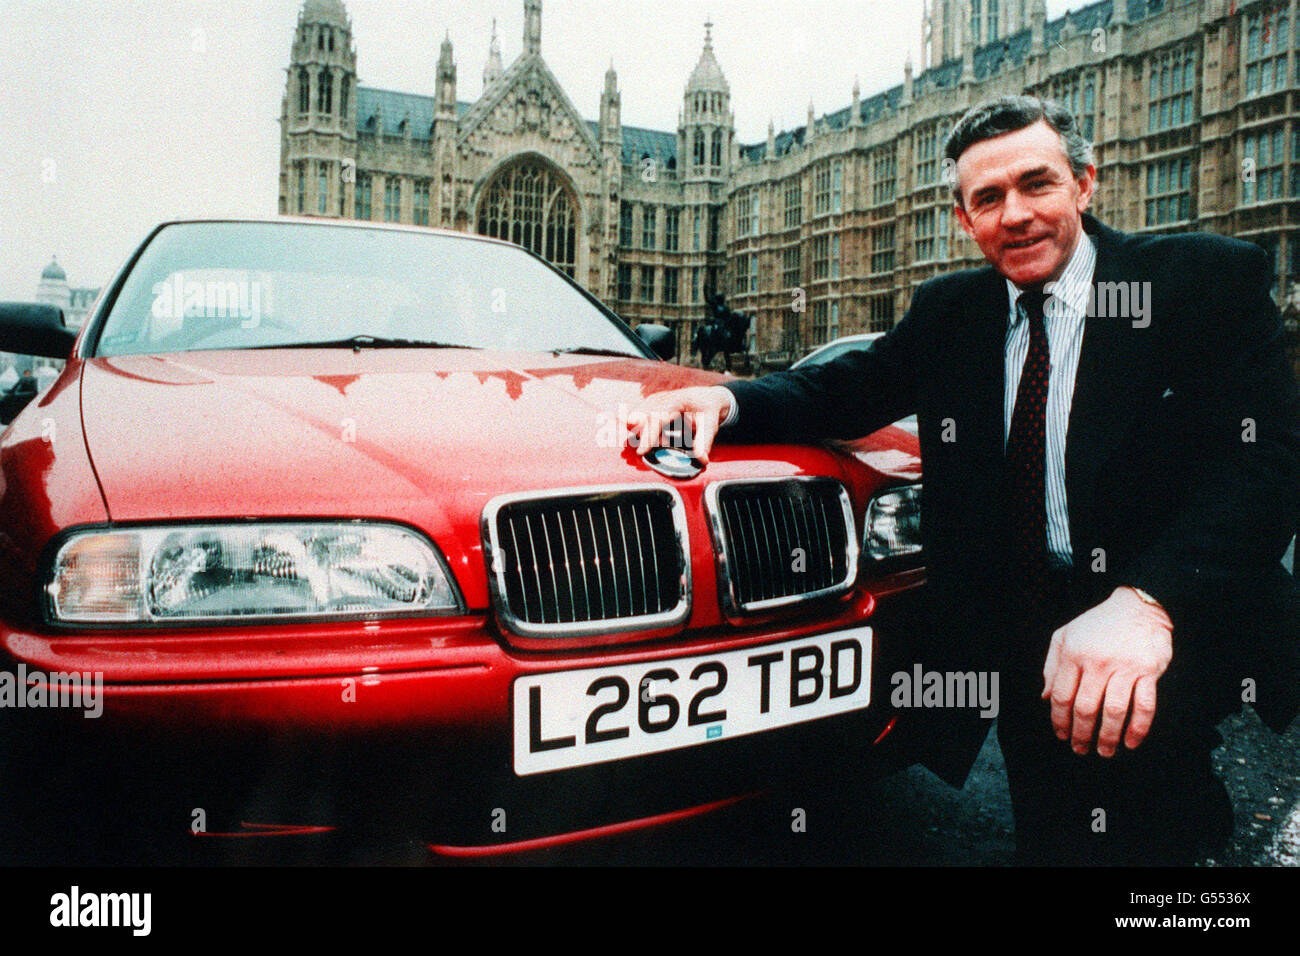 John Carlisle MP hybrid car Stock Photo